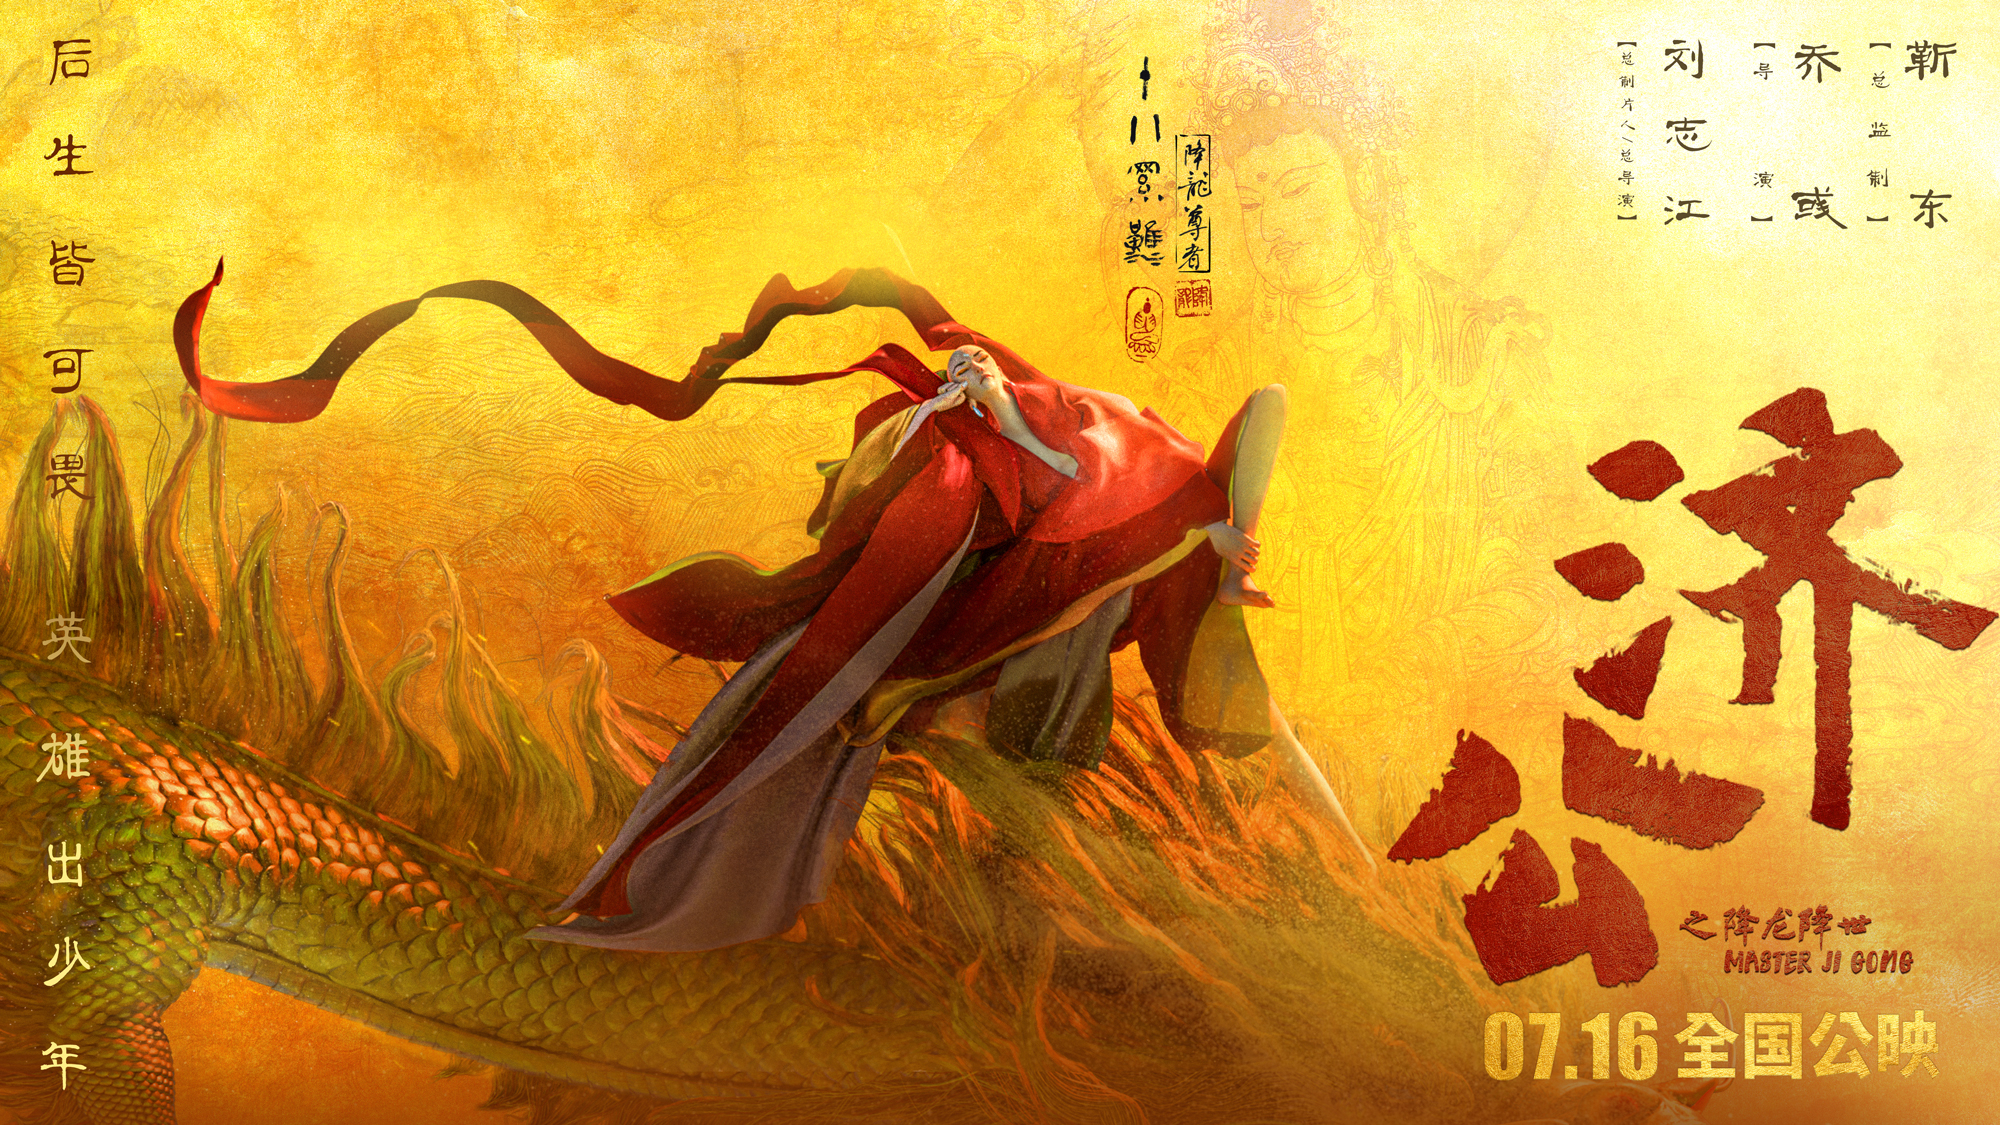 Banner Phim Tế Công: Hàng Long Giáng Thế (Master Ji Gong)